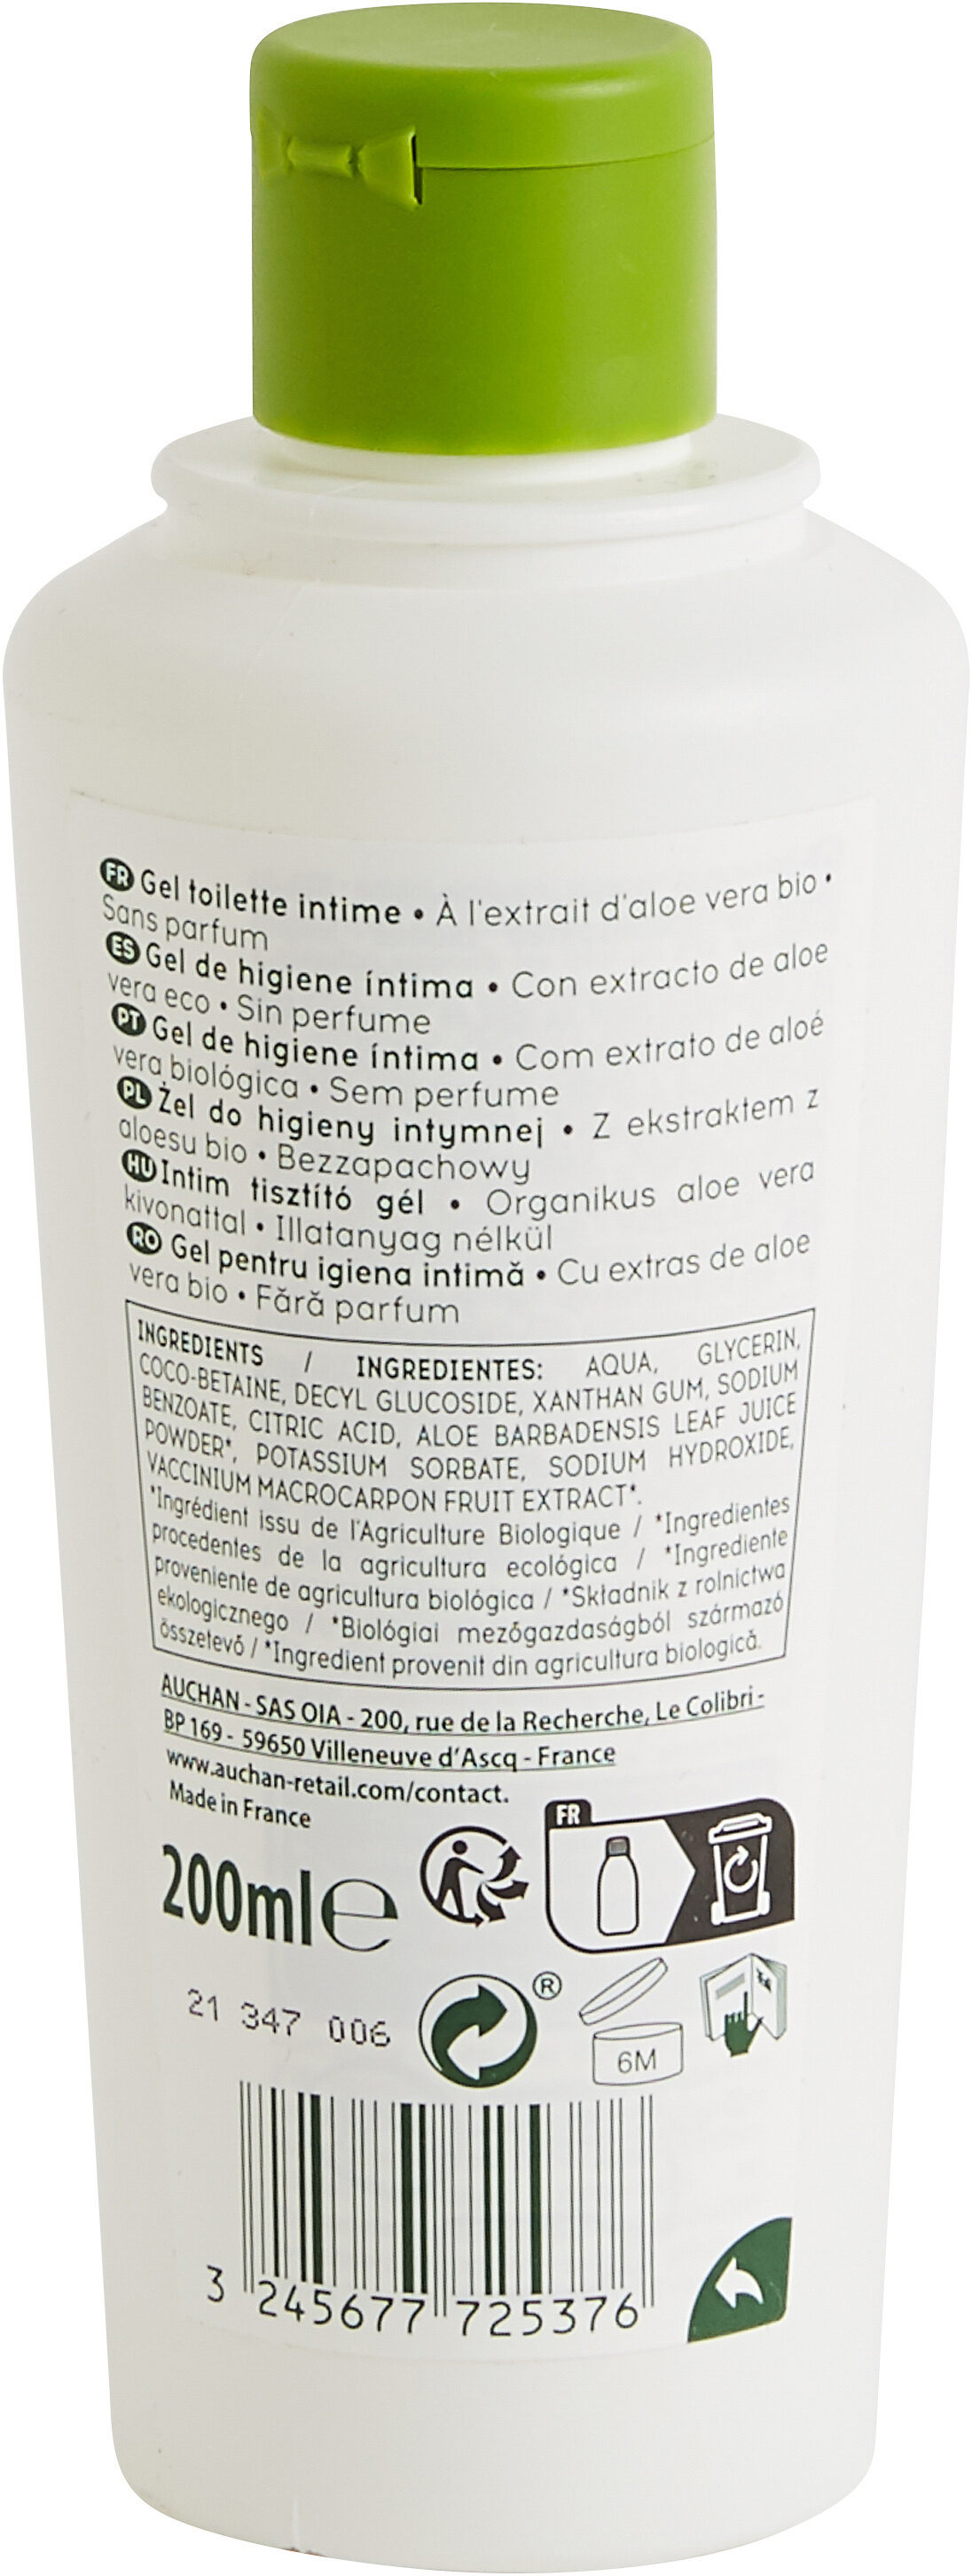 COSMIA BIO GEL TOILETTE INTIMEà l'extrait d'aloe vera biosans parfumpréserve et respecte l'équilibre intime - Продукт - fr